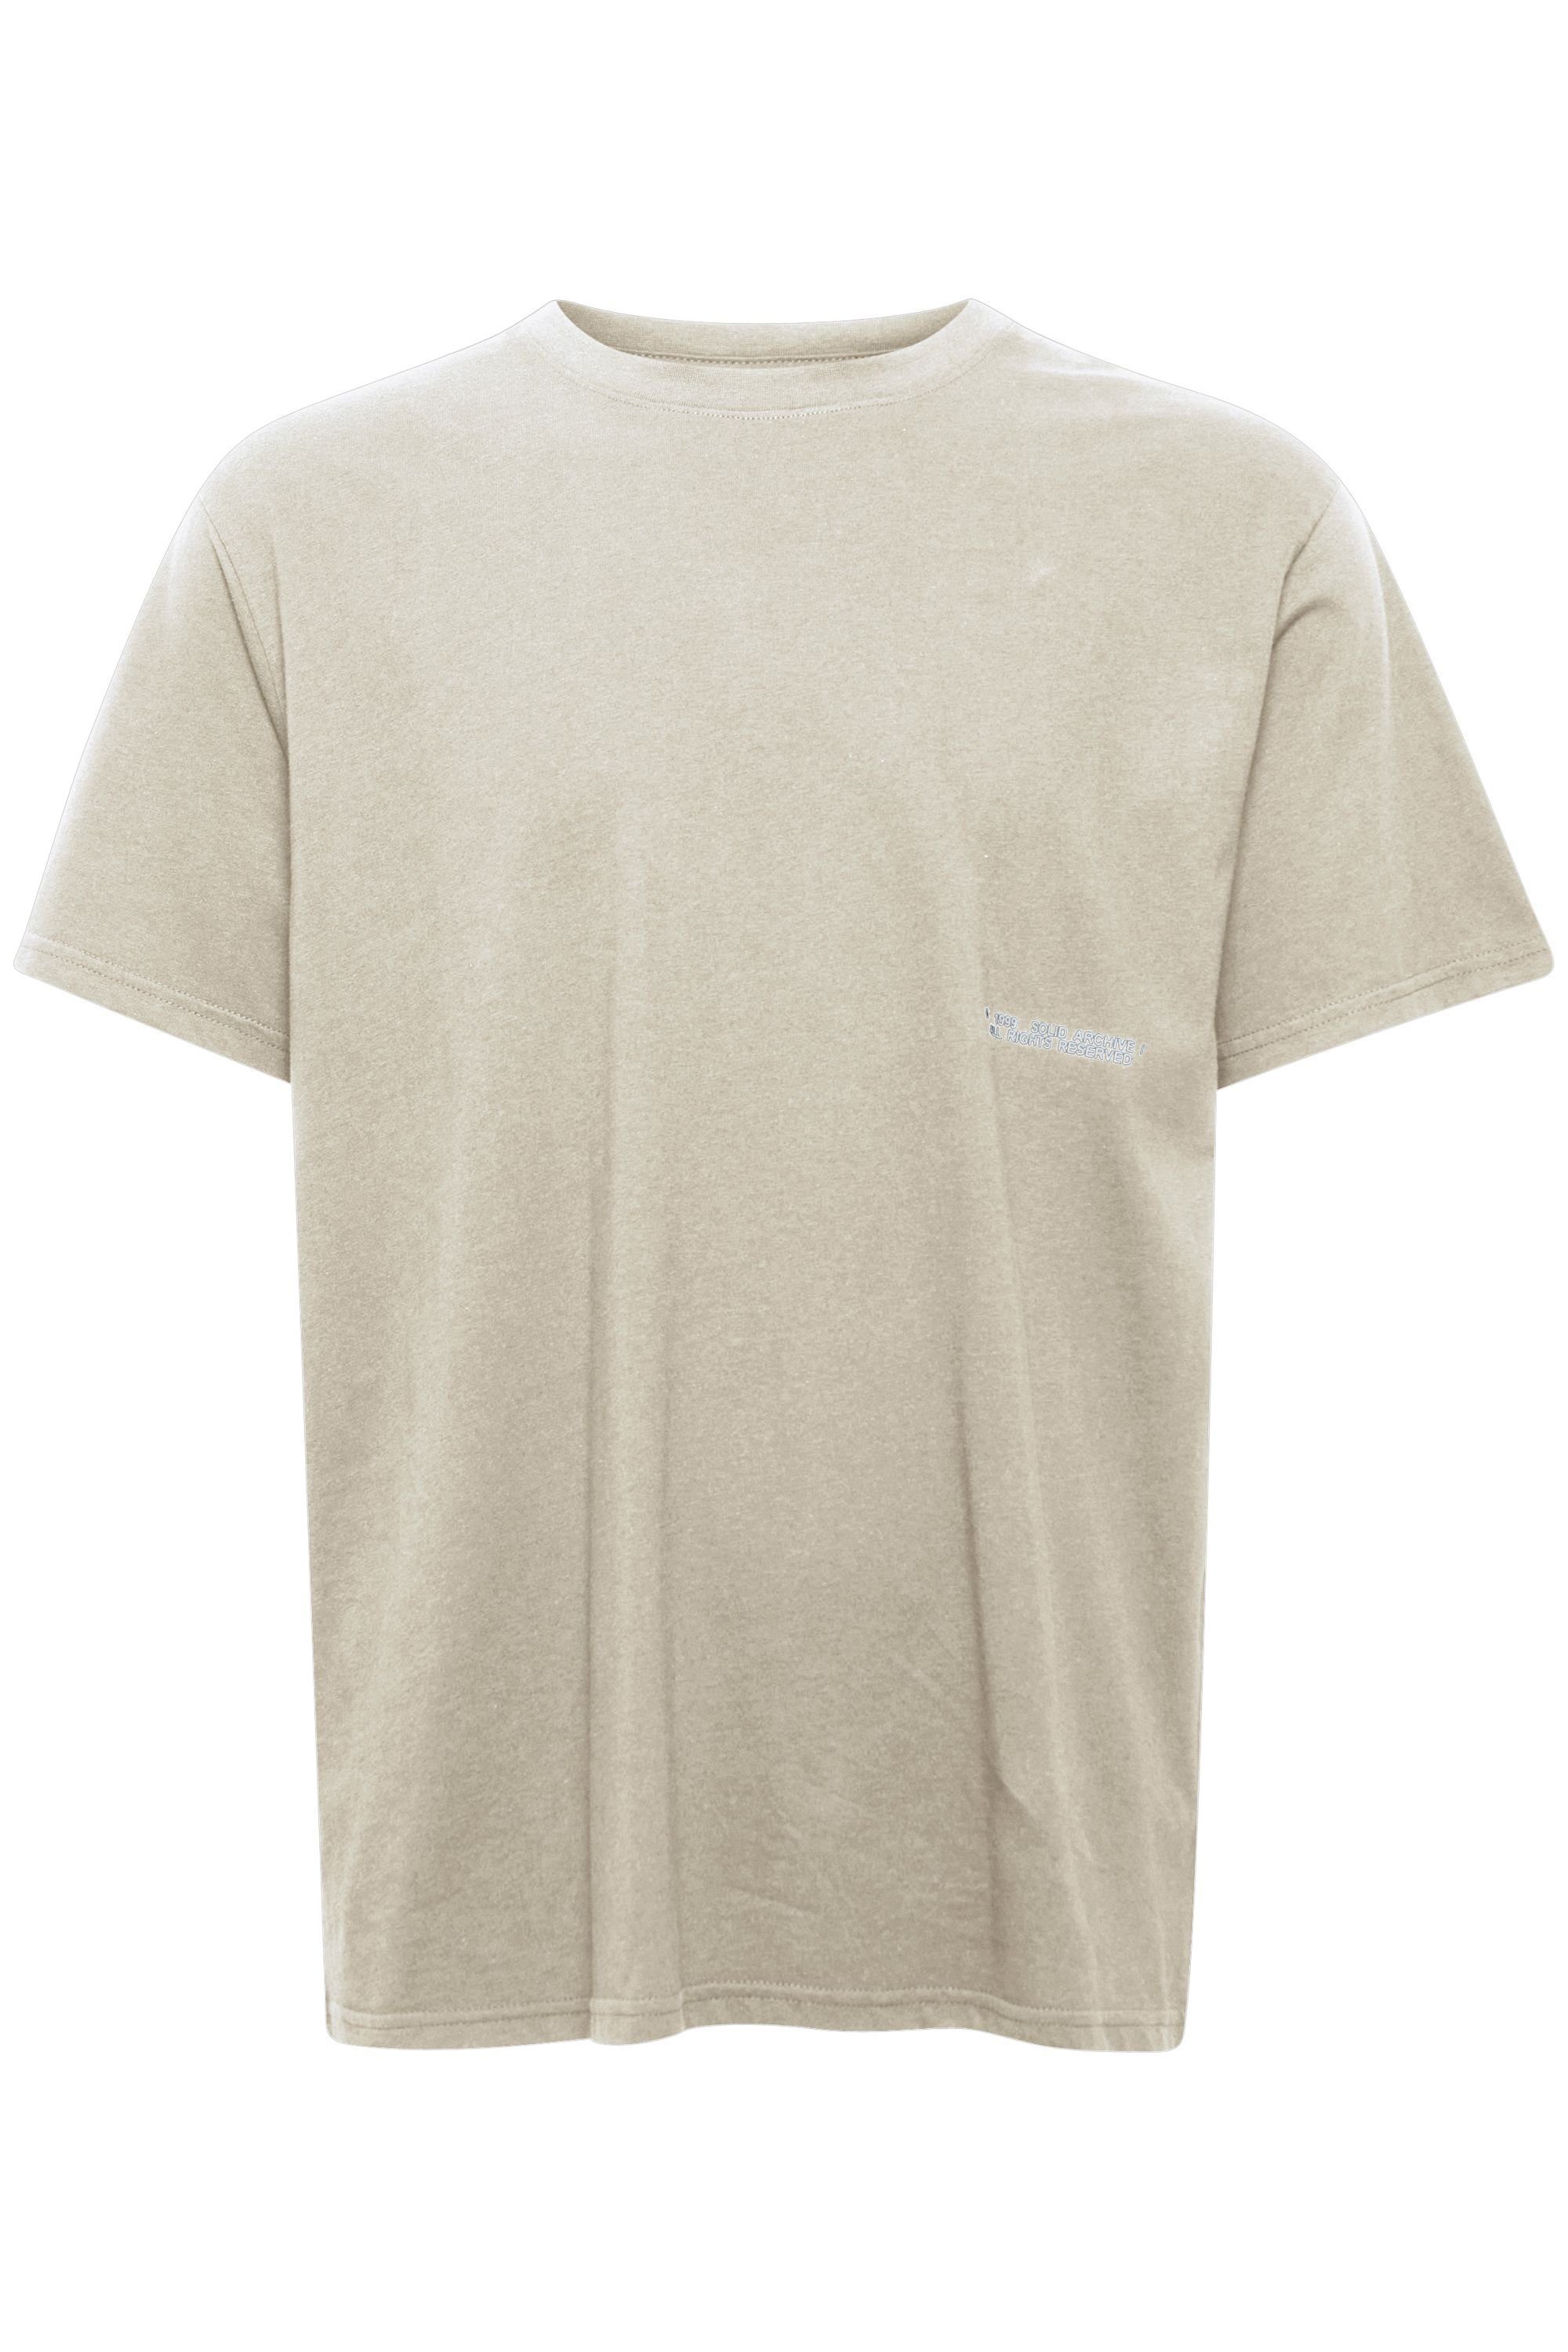 OATMEAL T-Shirt SDGen 21107870 - !Solid (130401)